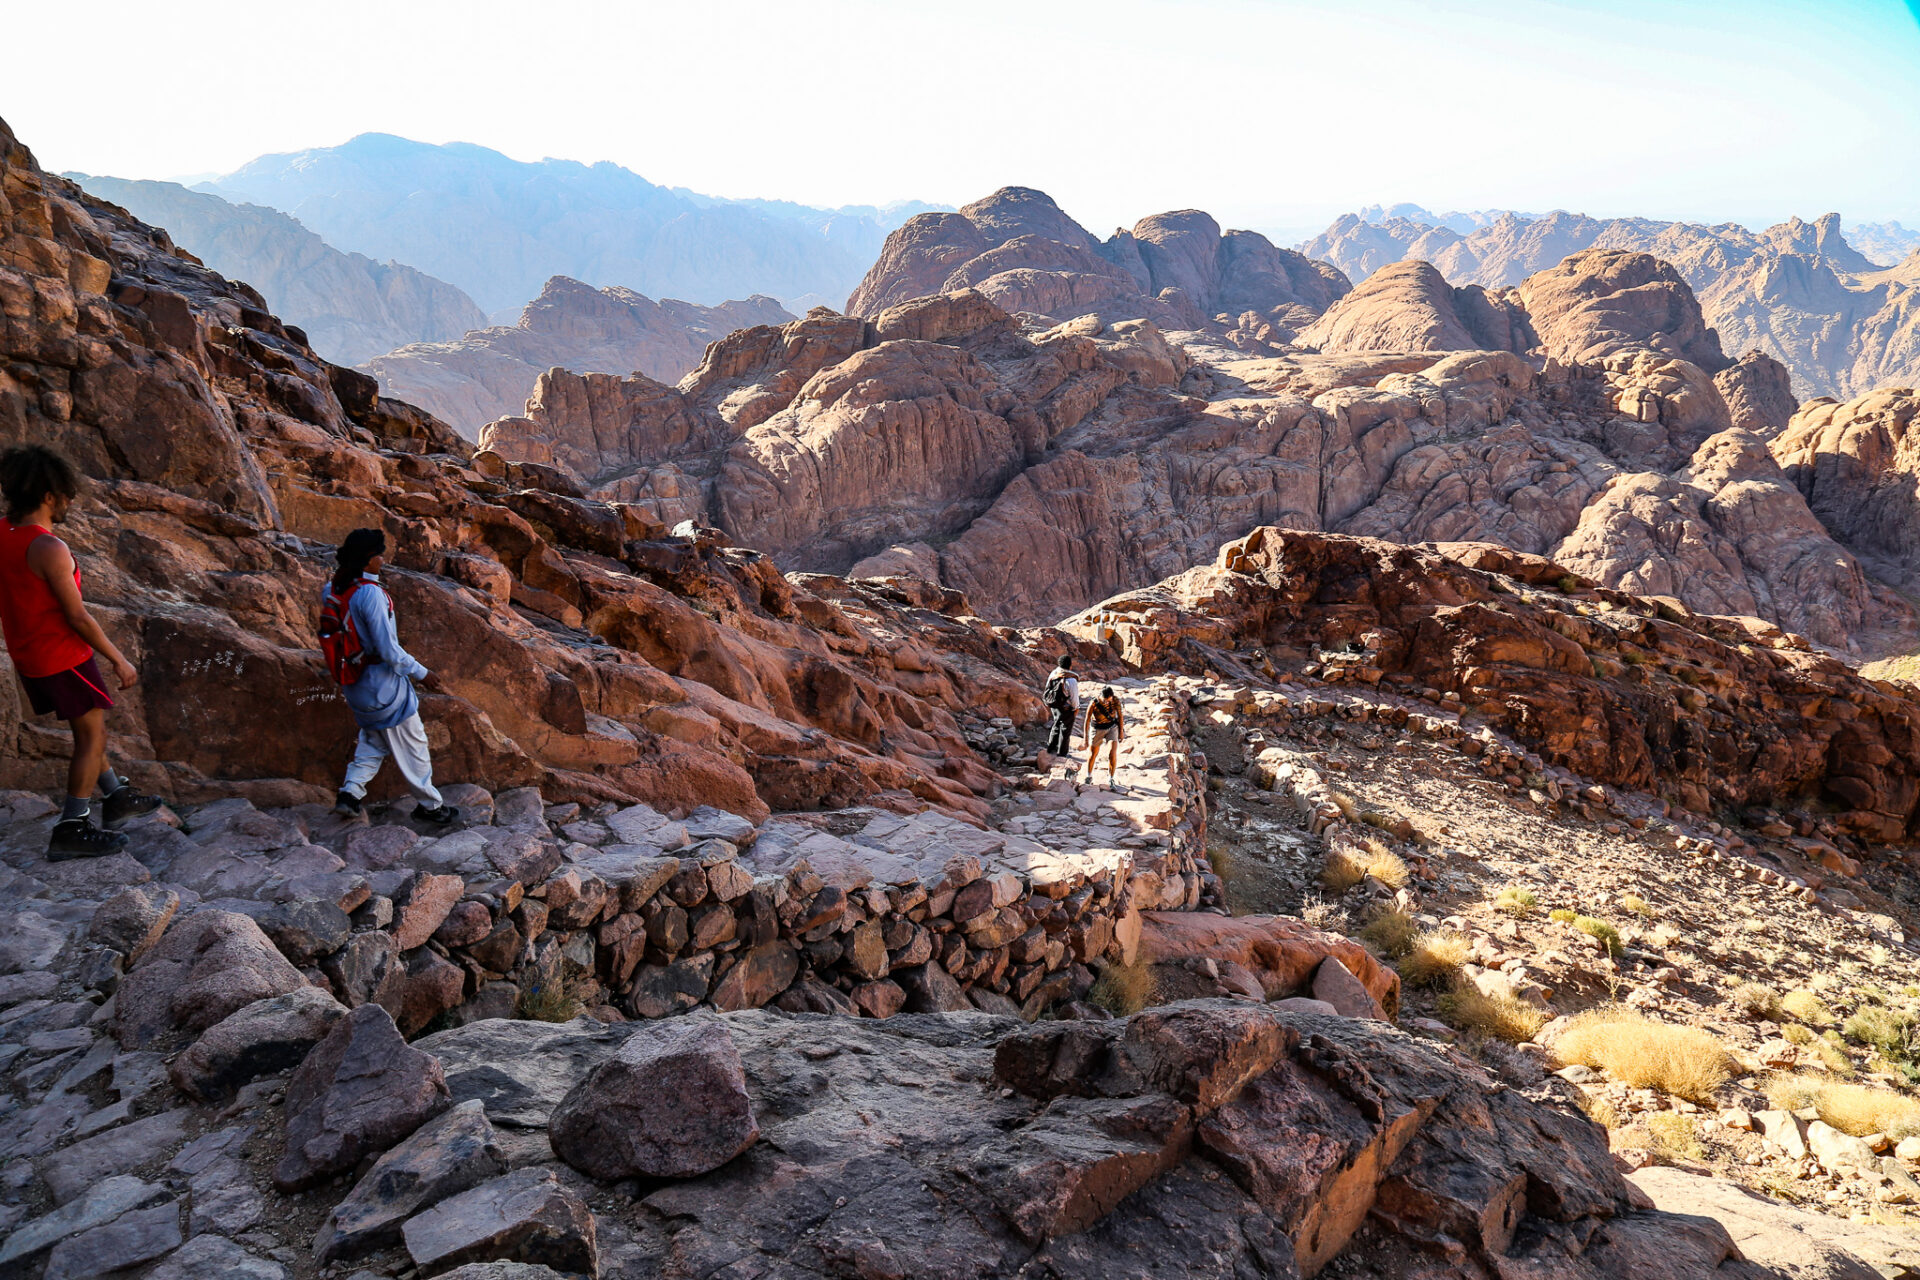 Mount Sinai hiking trail